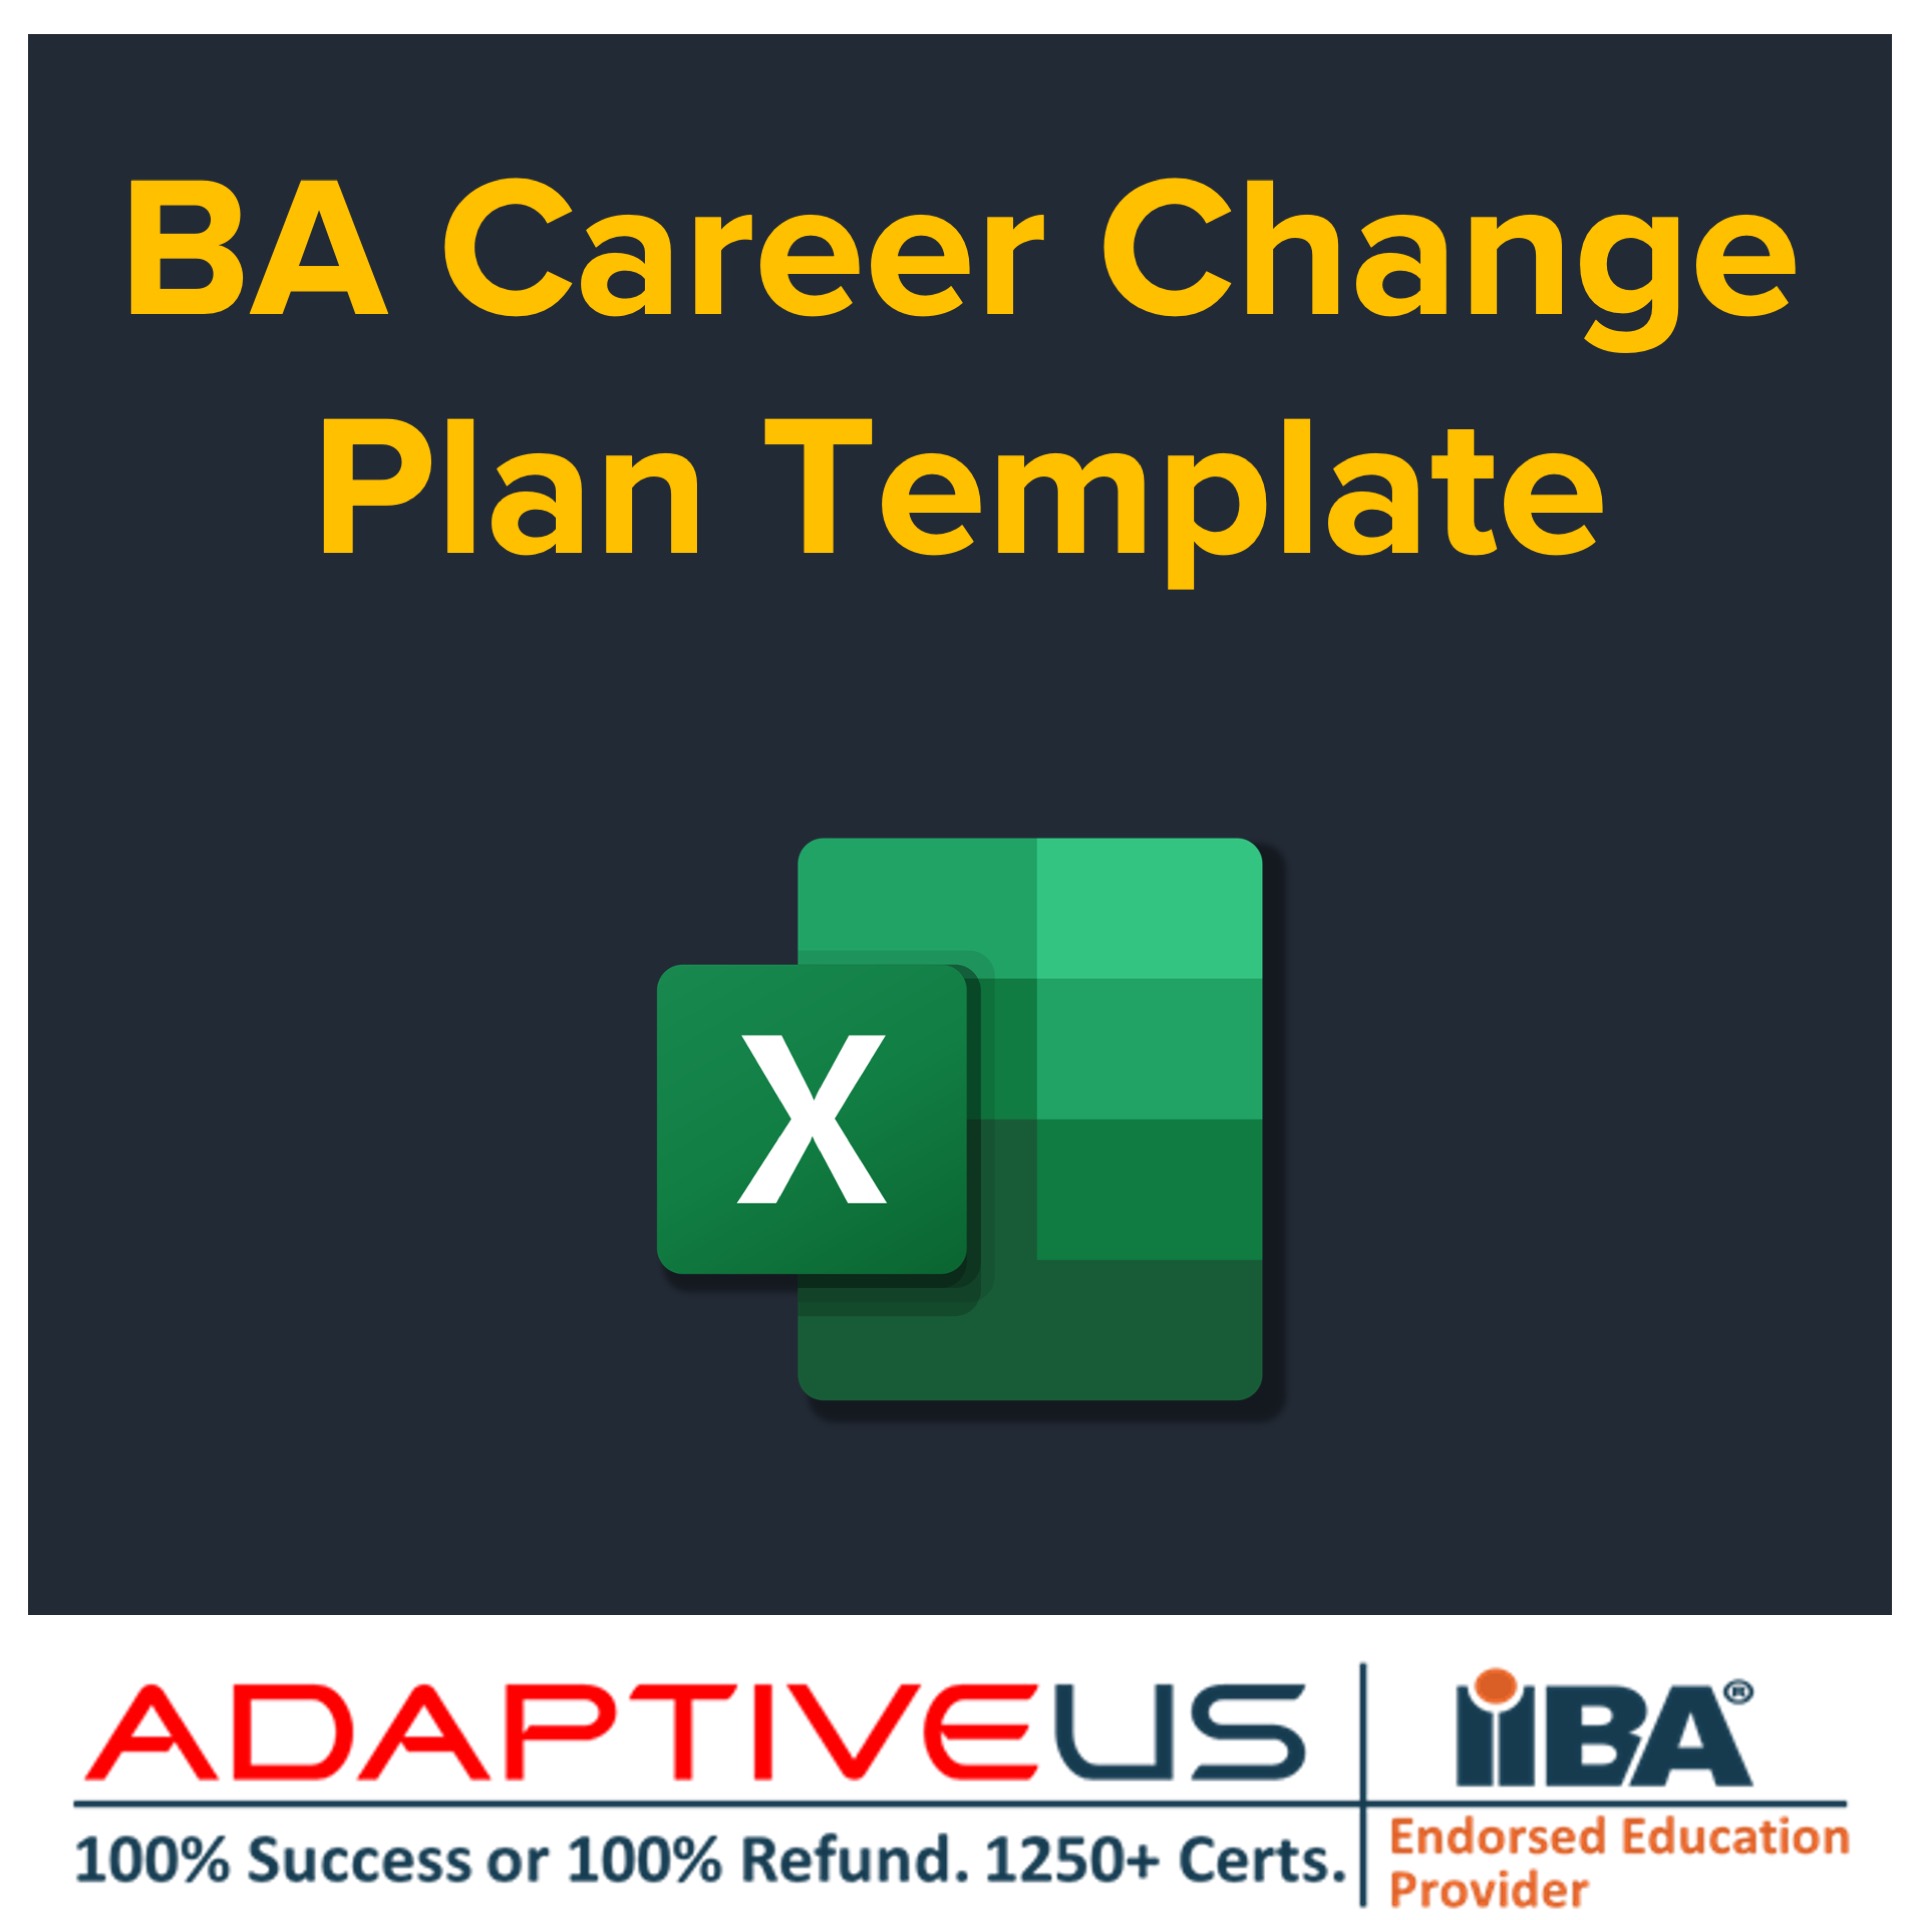 BA Career Change Plan